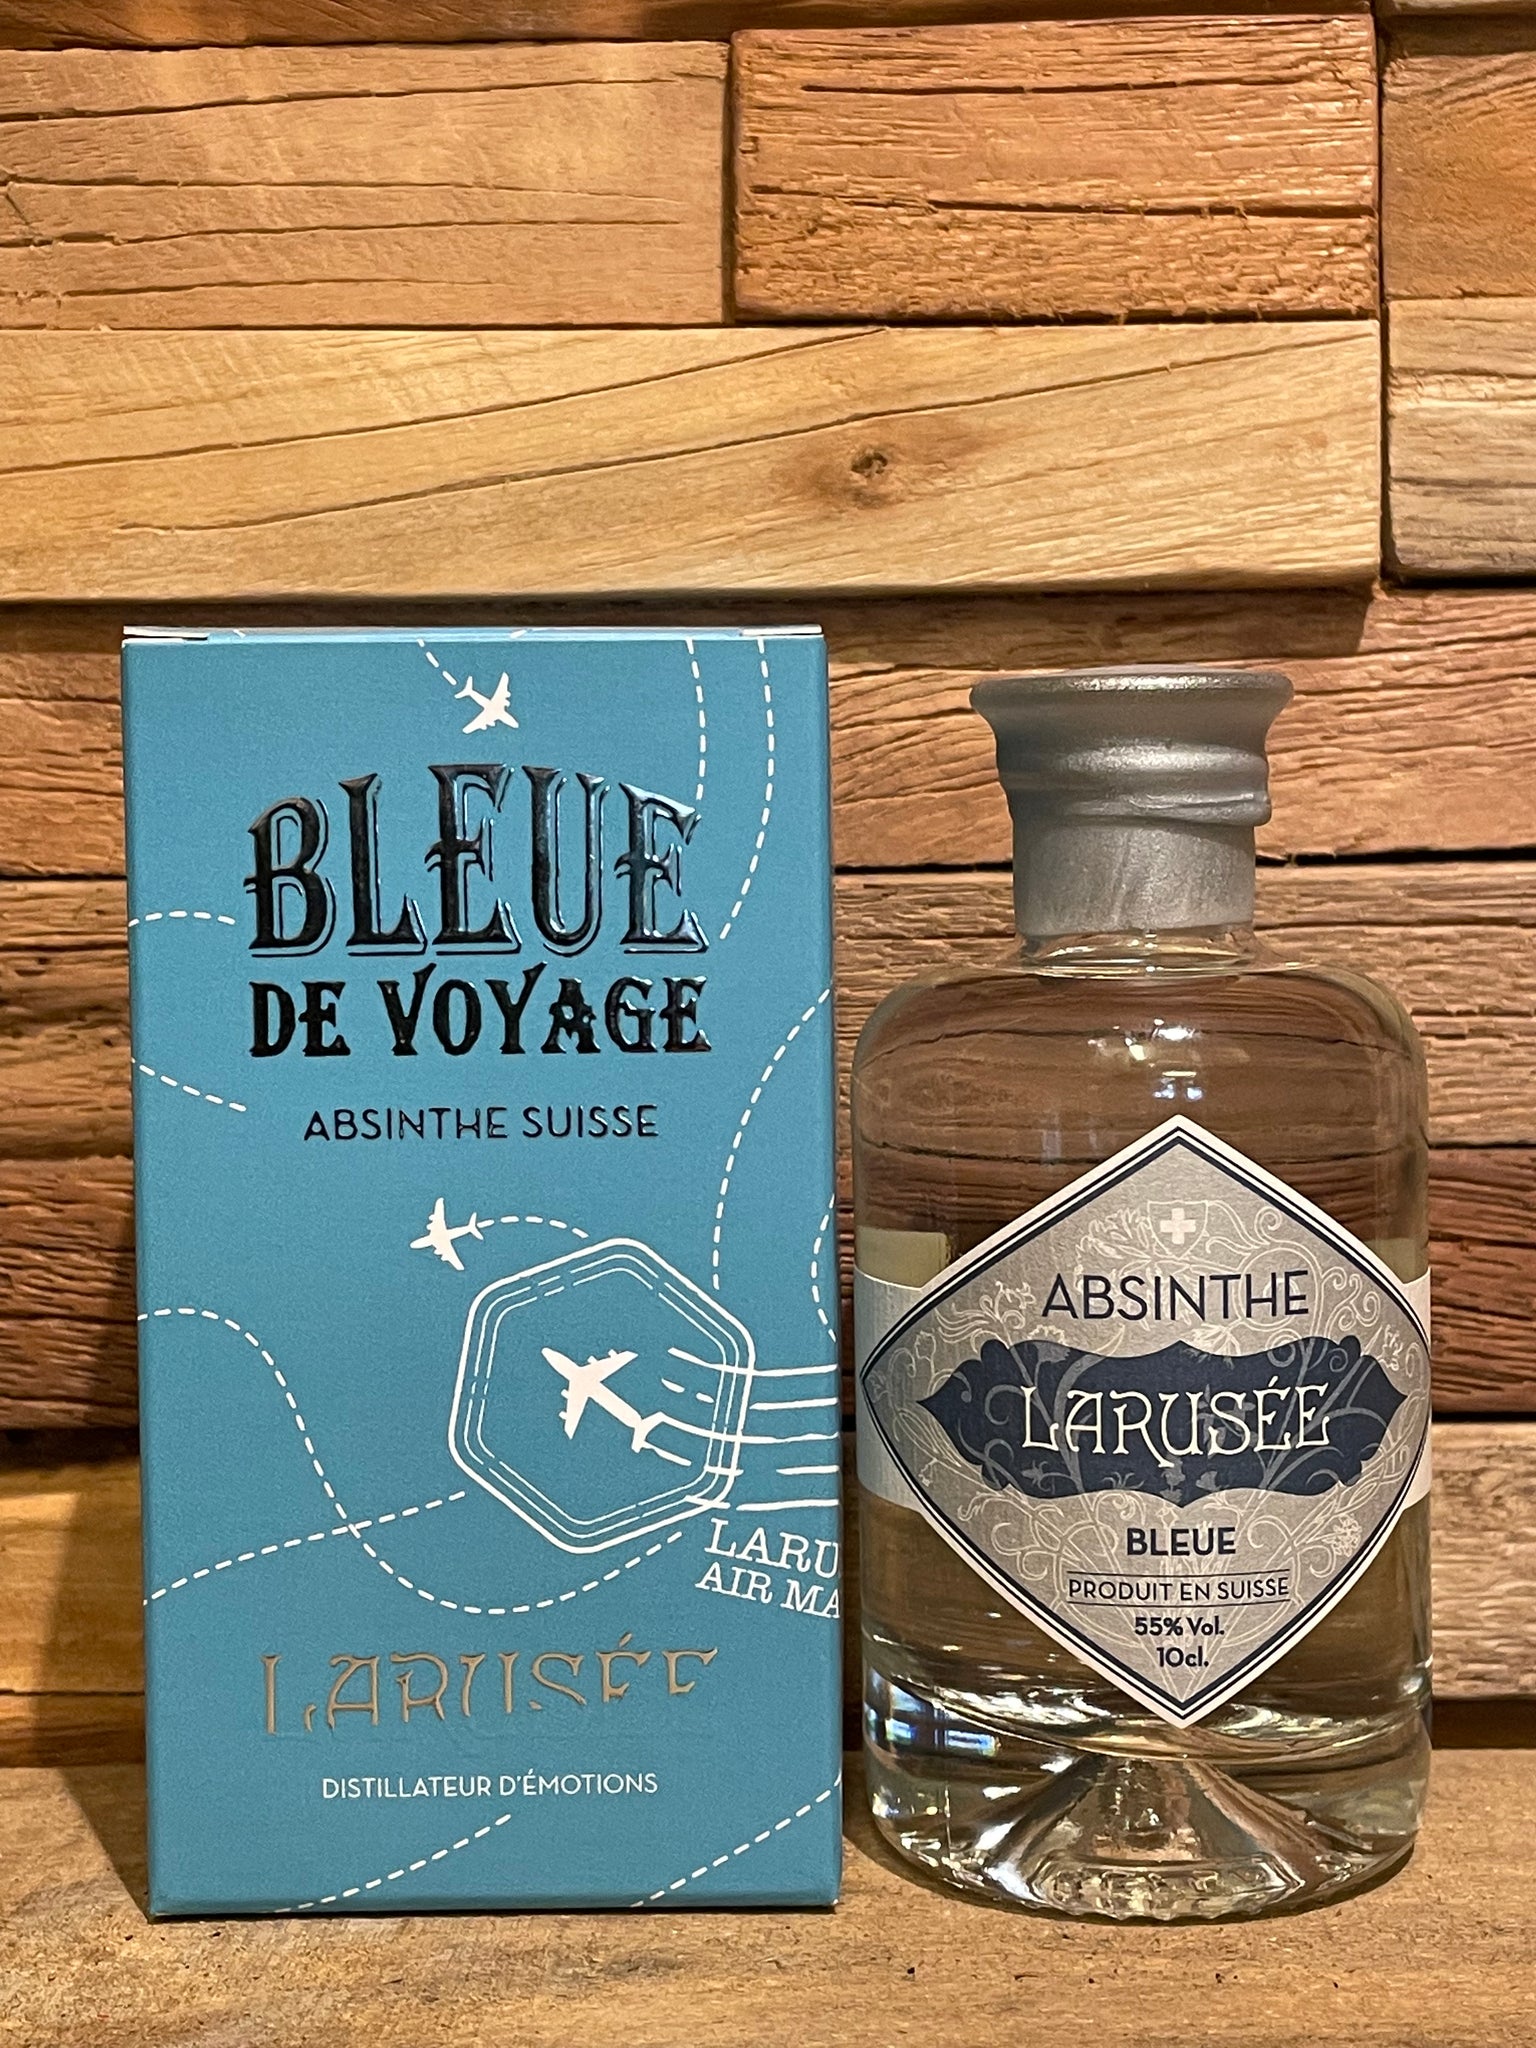 Absinthe Larusée Bleue “de Voyage”